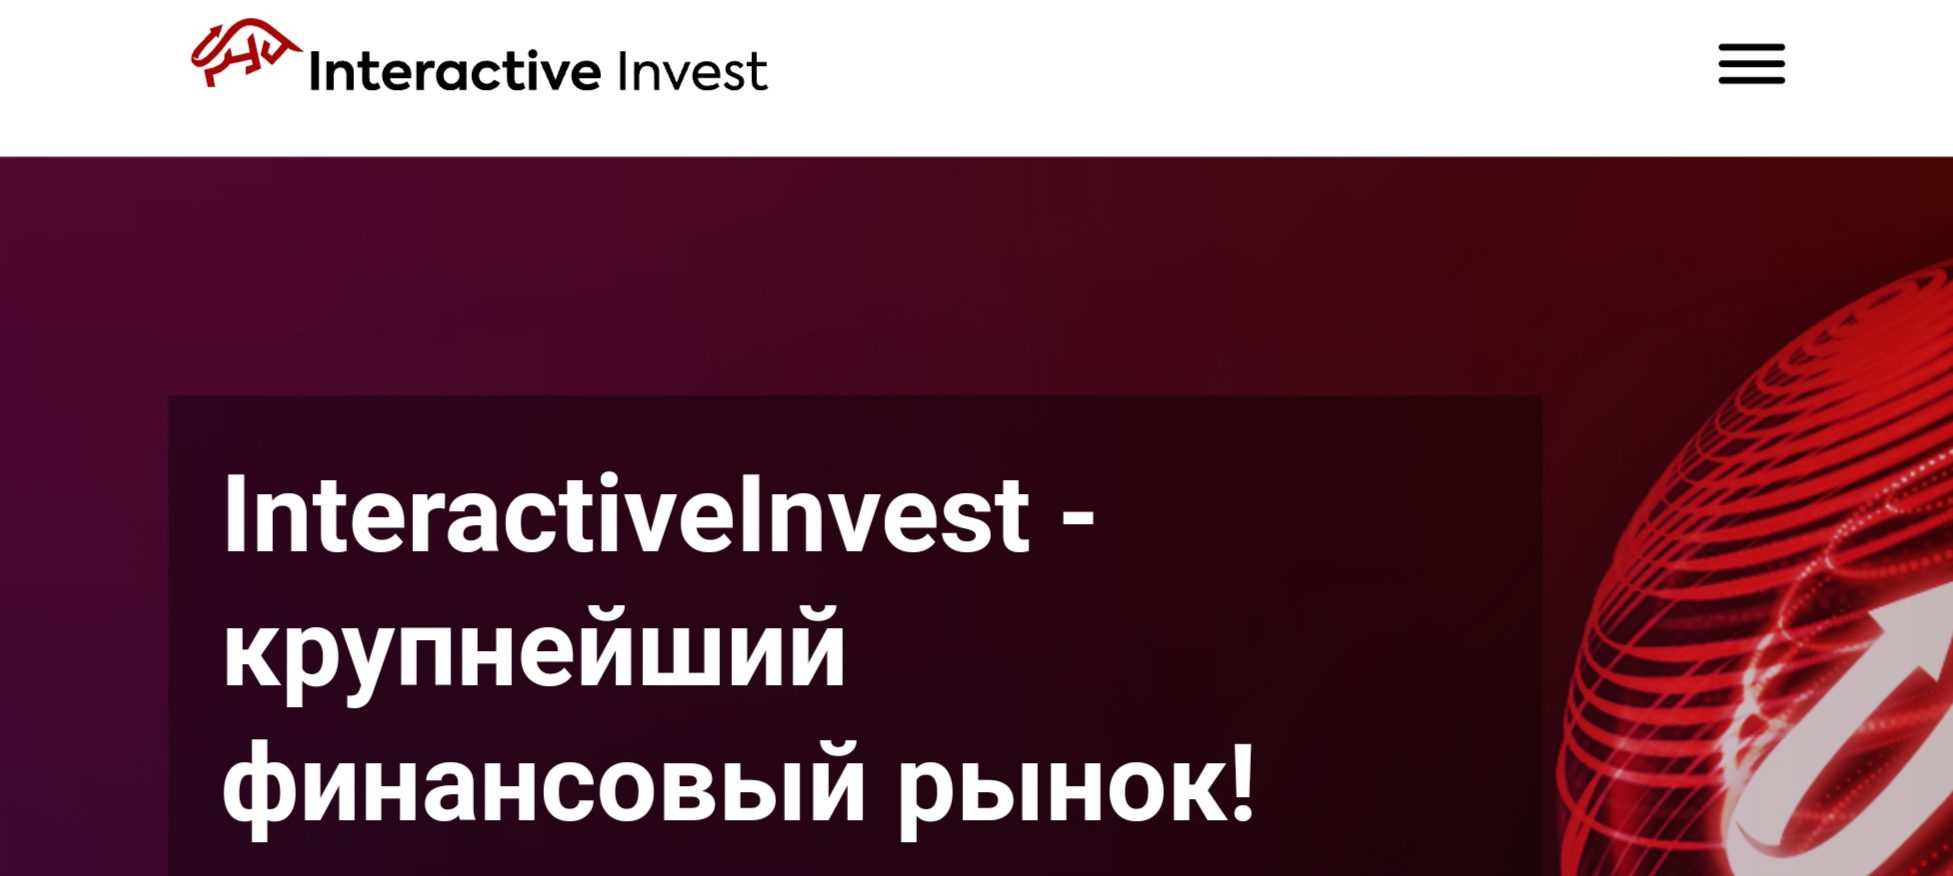 Interactive Invest обзор брокера